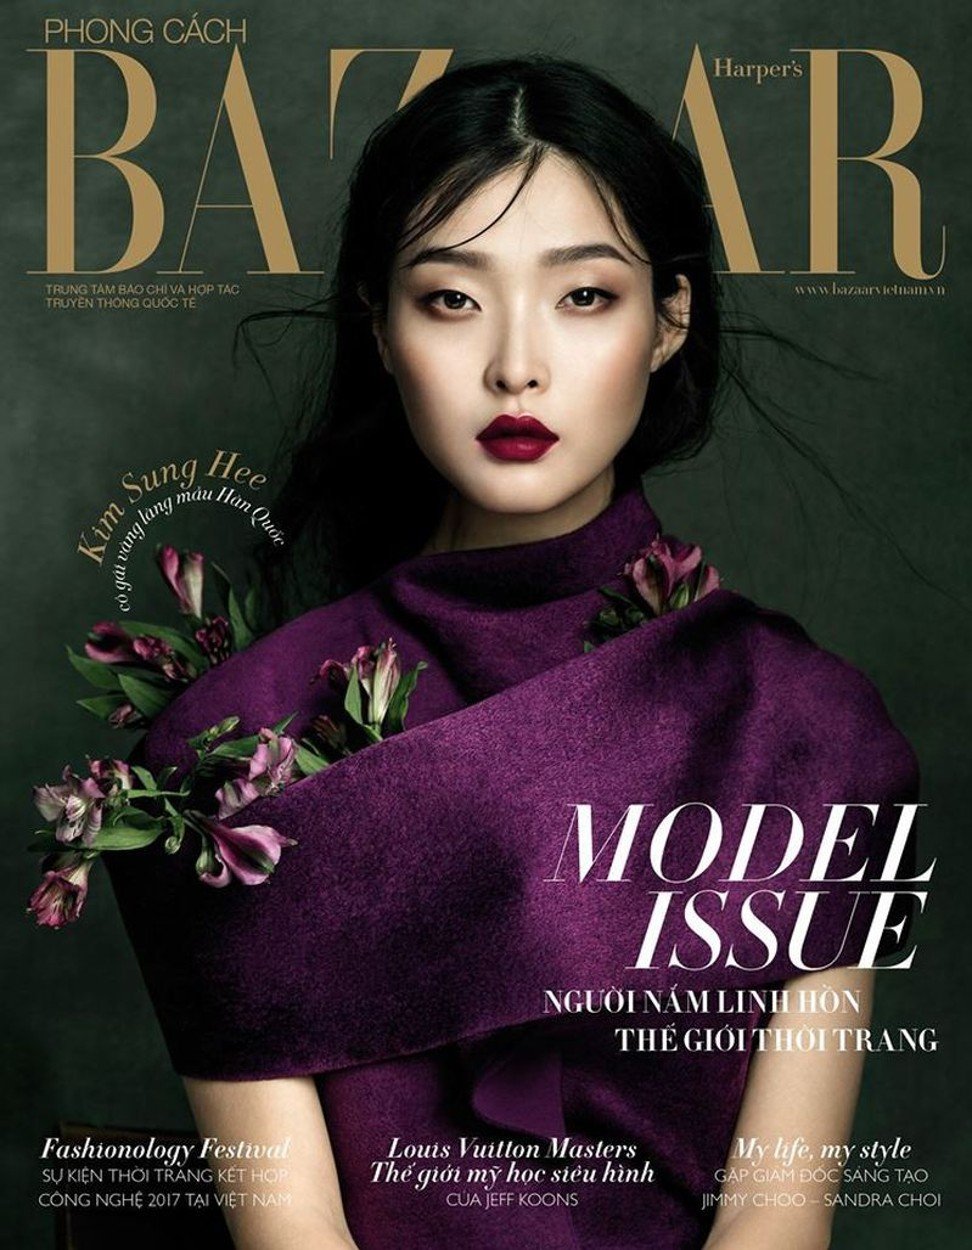 A cover of Harper’s Bazaar Vietnam.